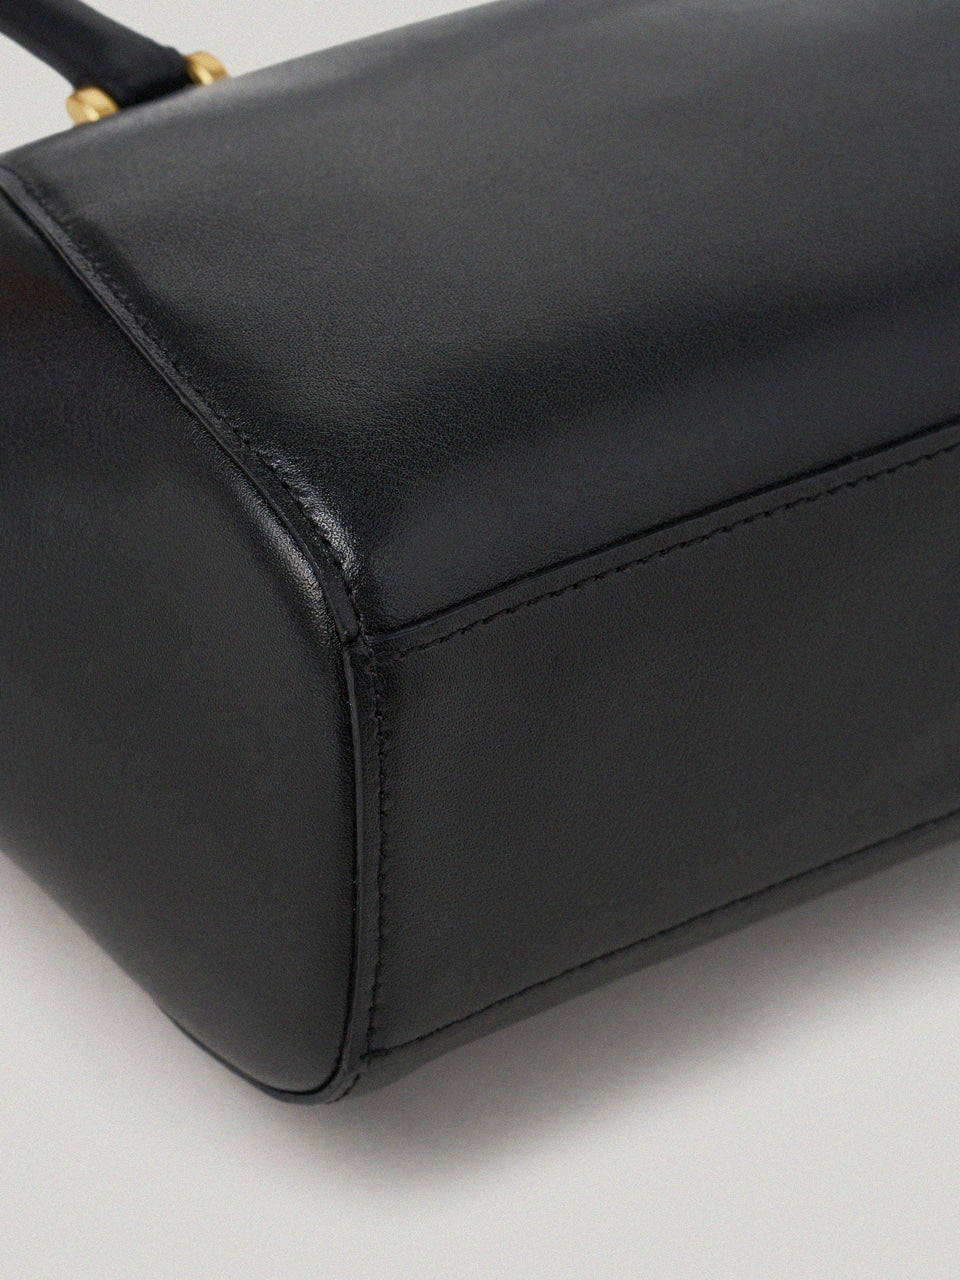 Forme Bag In Soft Black